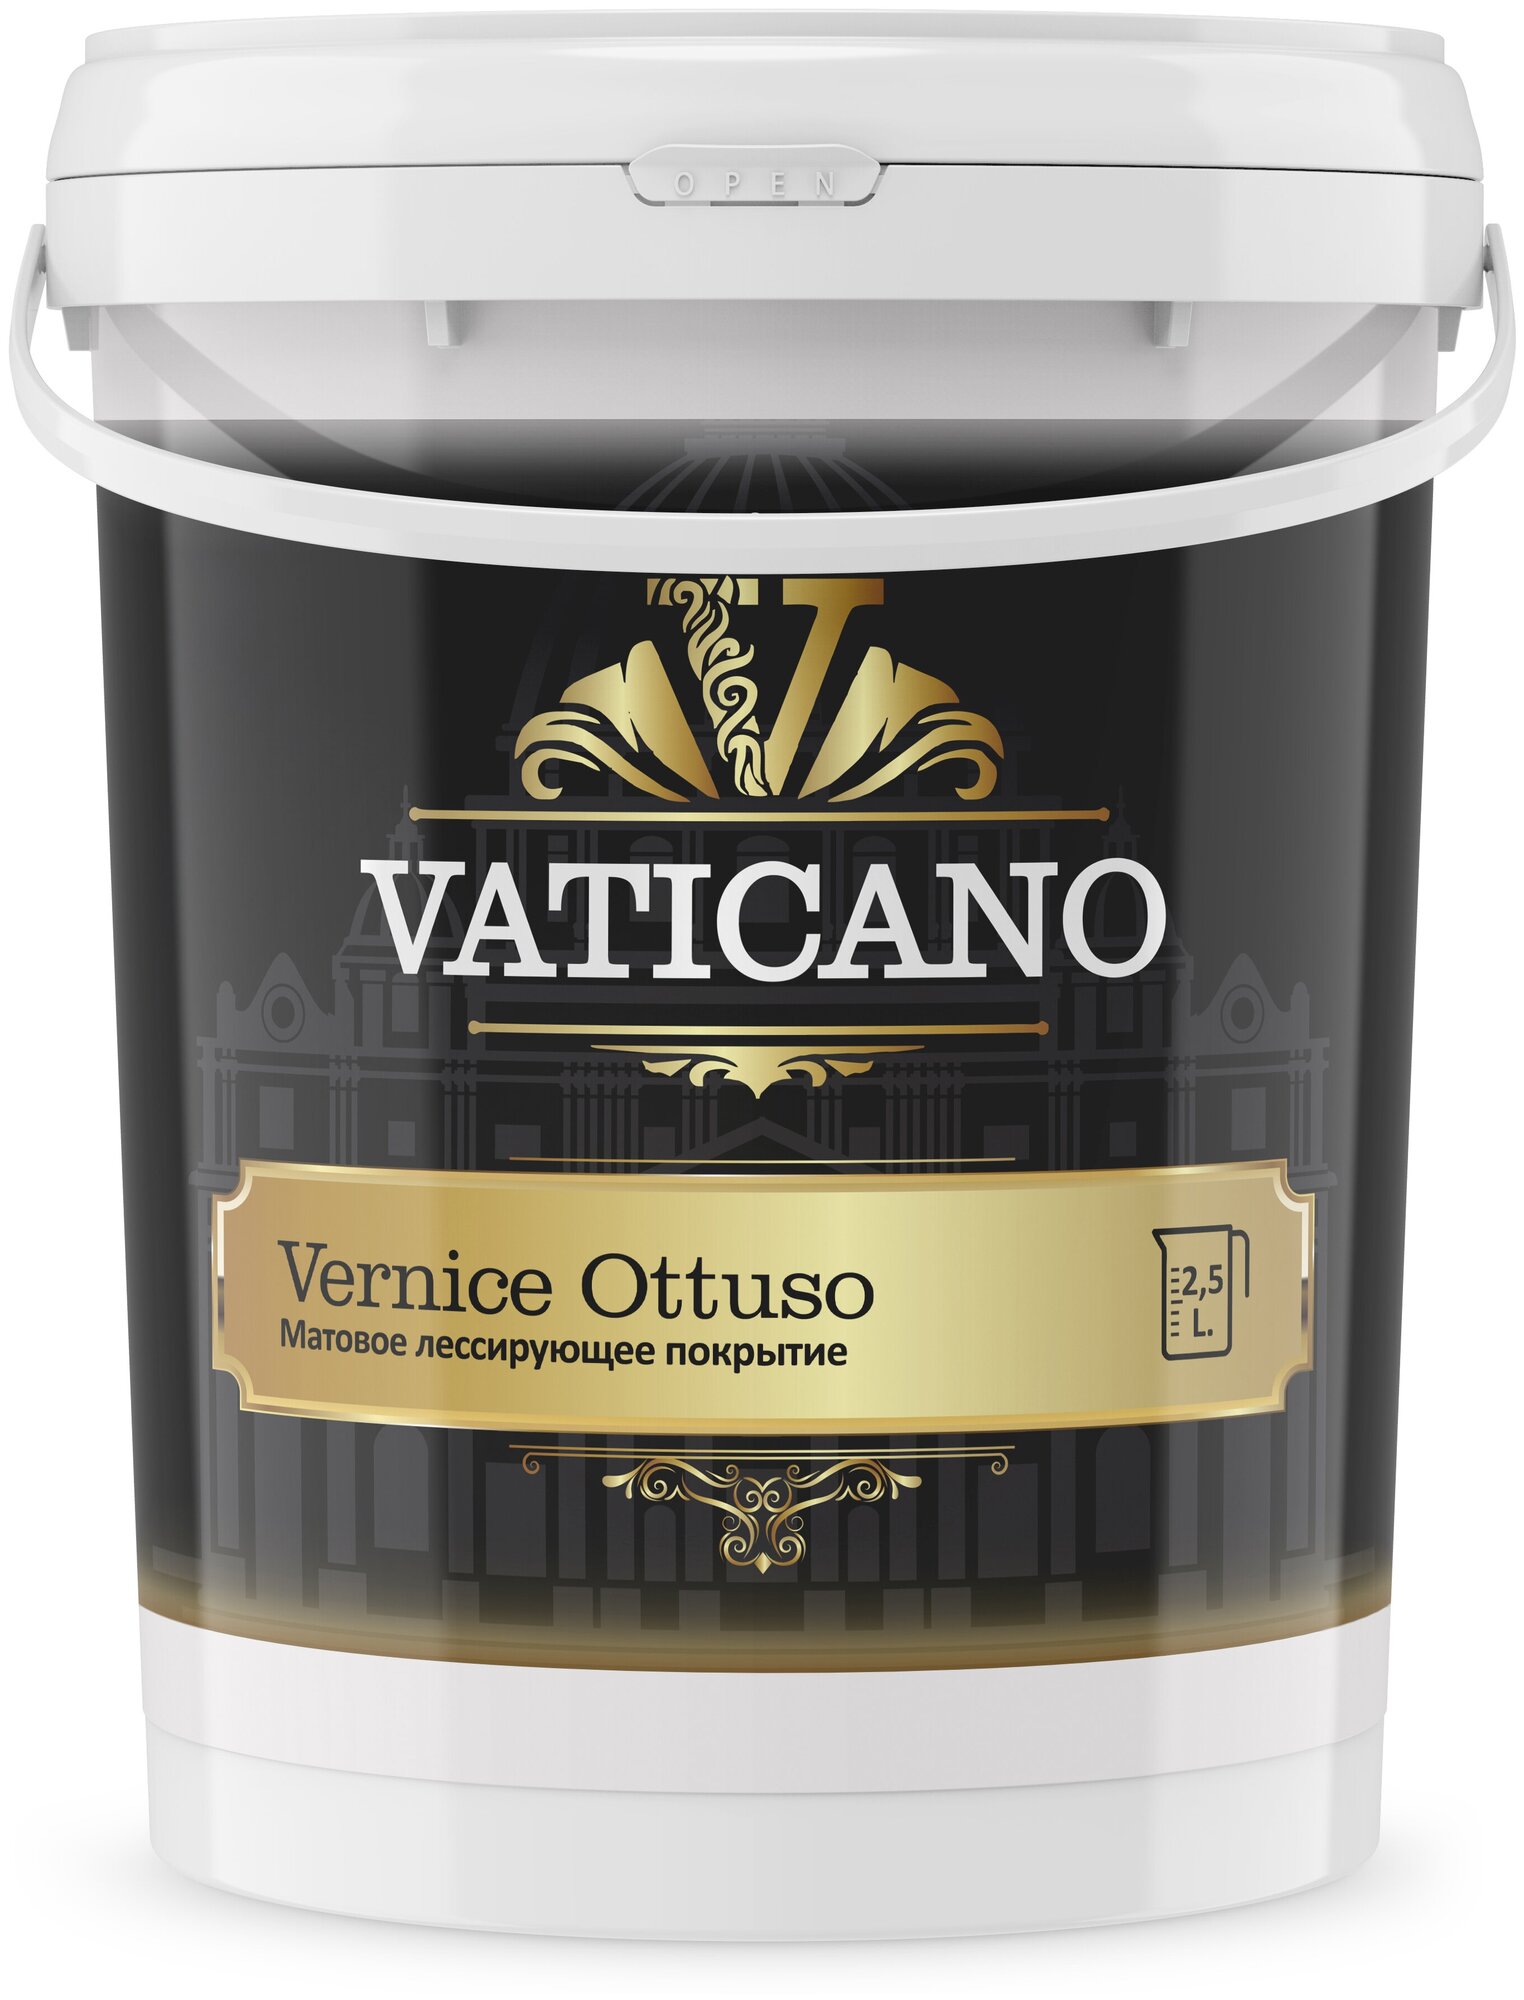 Финишное защитное покрытие VATICANO Vernice Ottuso 2.5 л, матовое лессирующее покрытие для стен. - фотография № 6